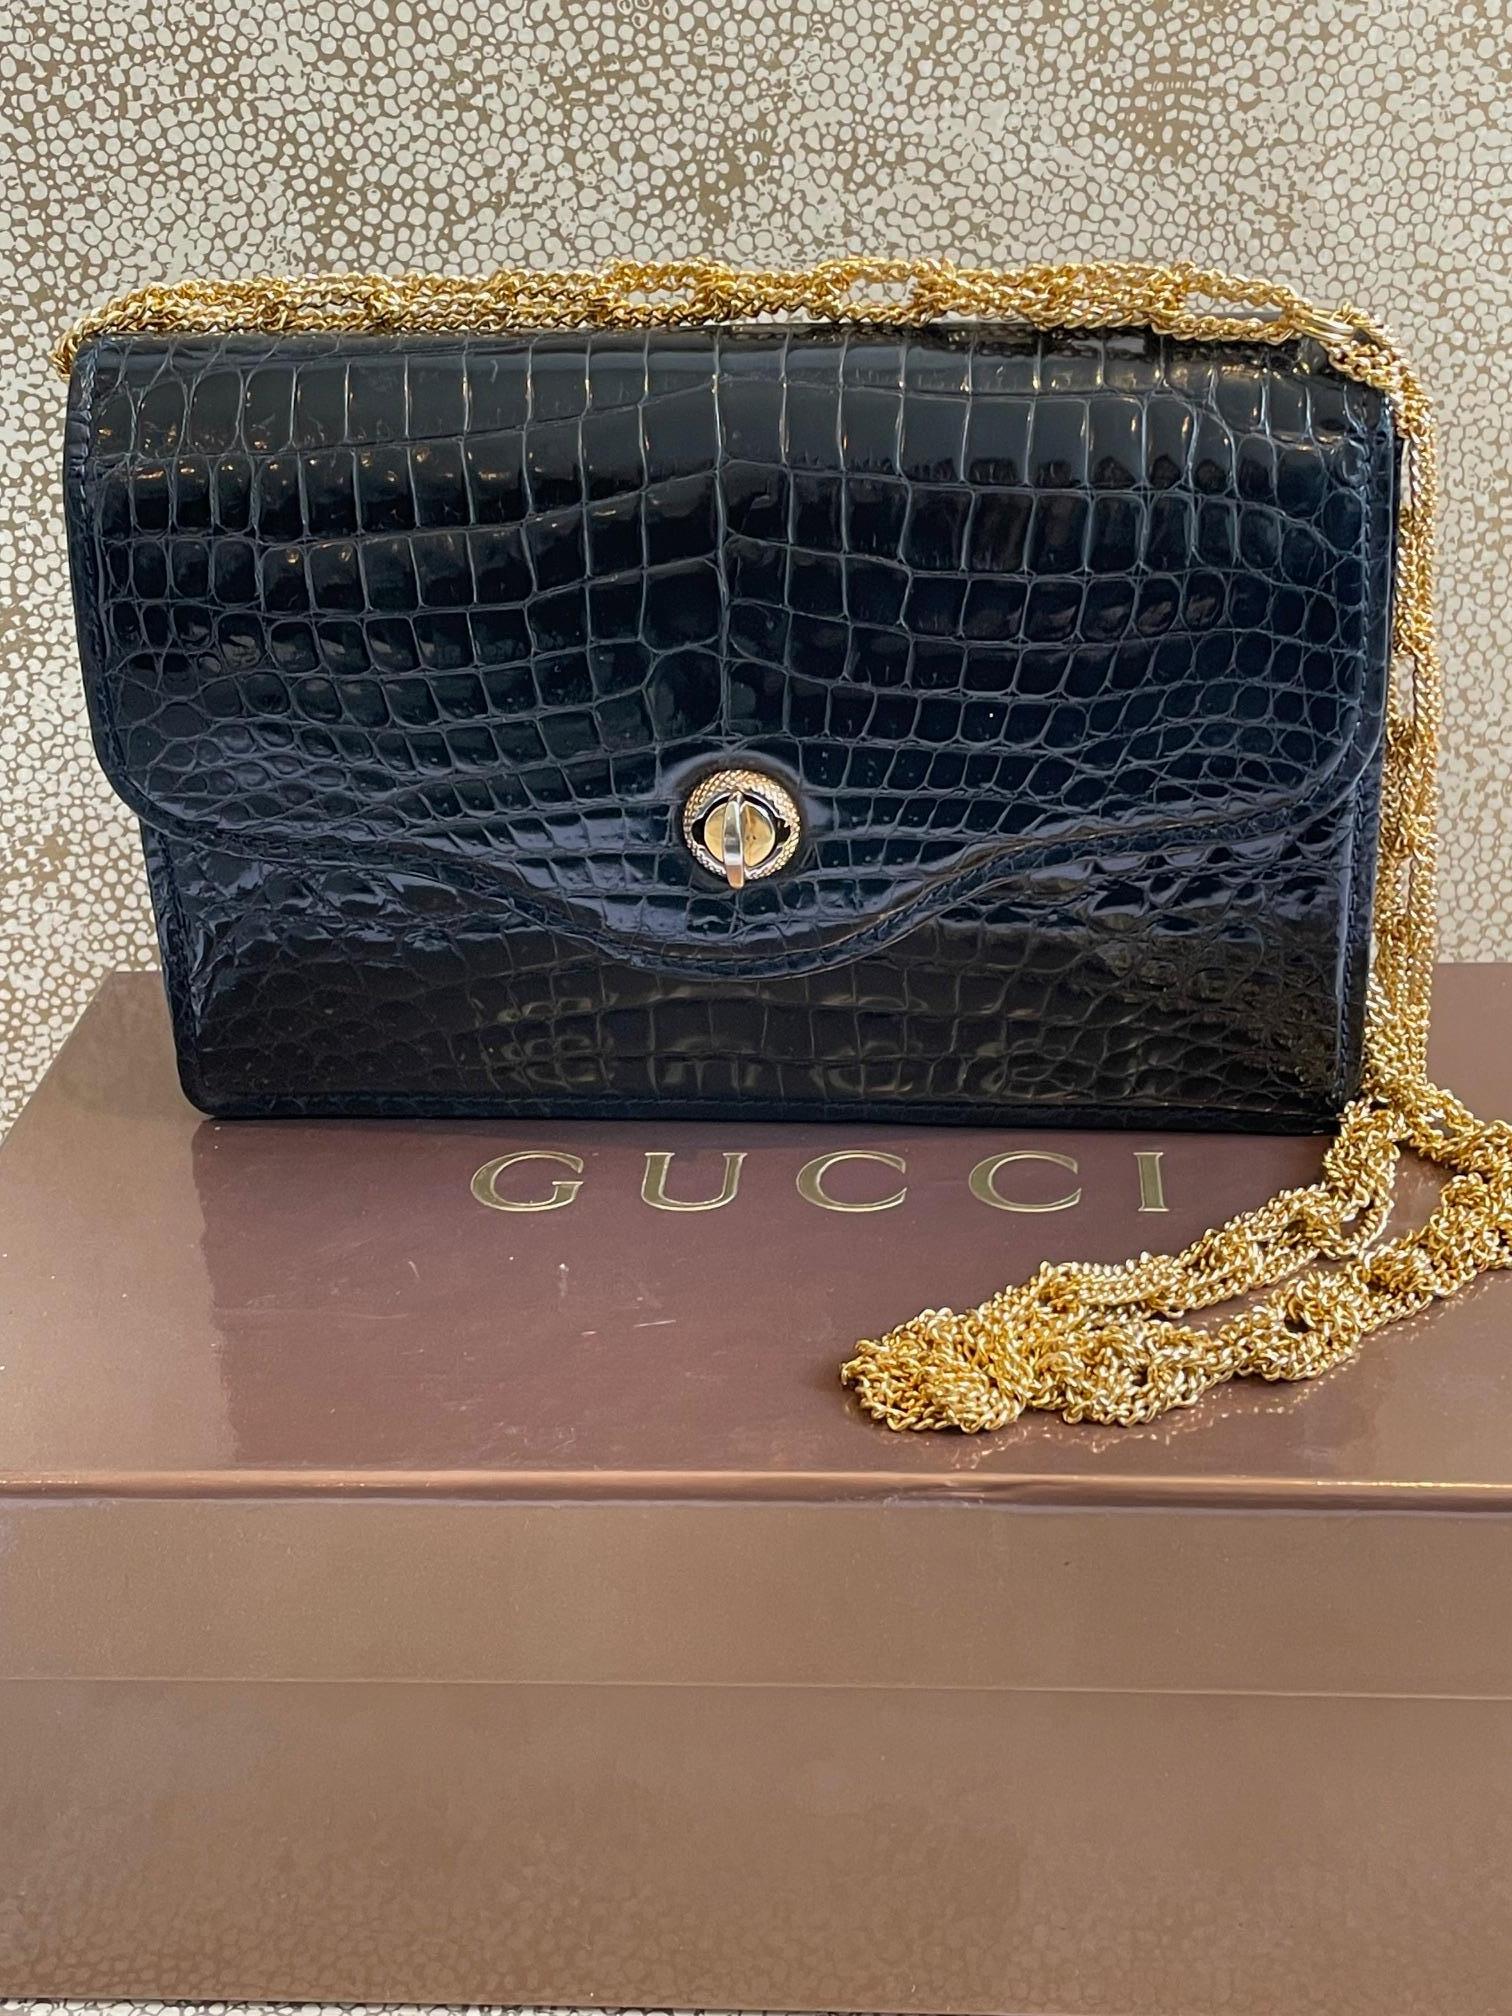 Gucci Krokodilkette und Drehverschluss Clutch  1960s. 

Eine atemberaubende, sehr seltene Vintage Gucci Krokodil Porosus Clutch Bag. Es ist eine sehr dunkle marineblaue Tasche (fast schwarz) mit marineblauen Nähten. Es handelt sich um eine